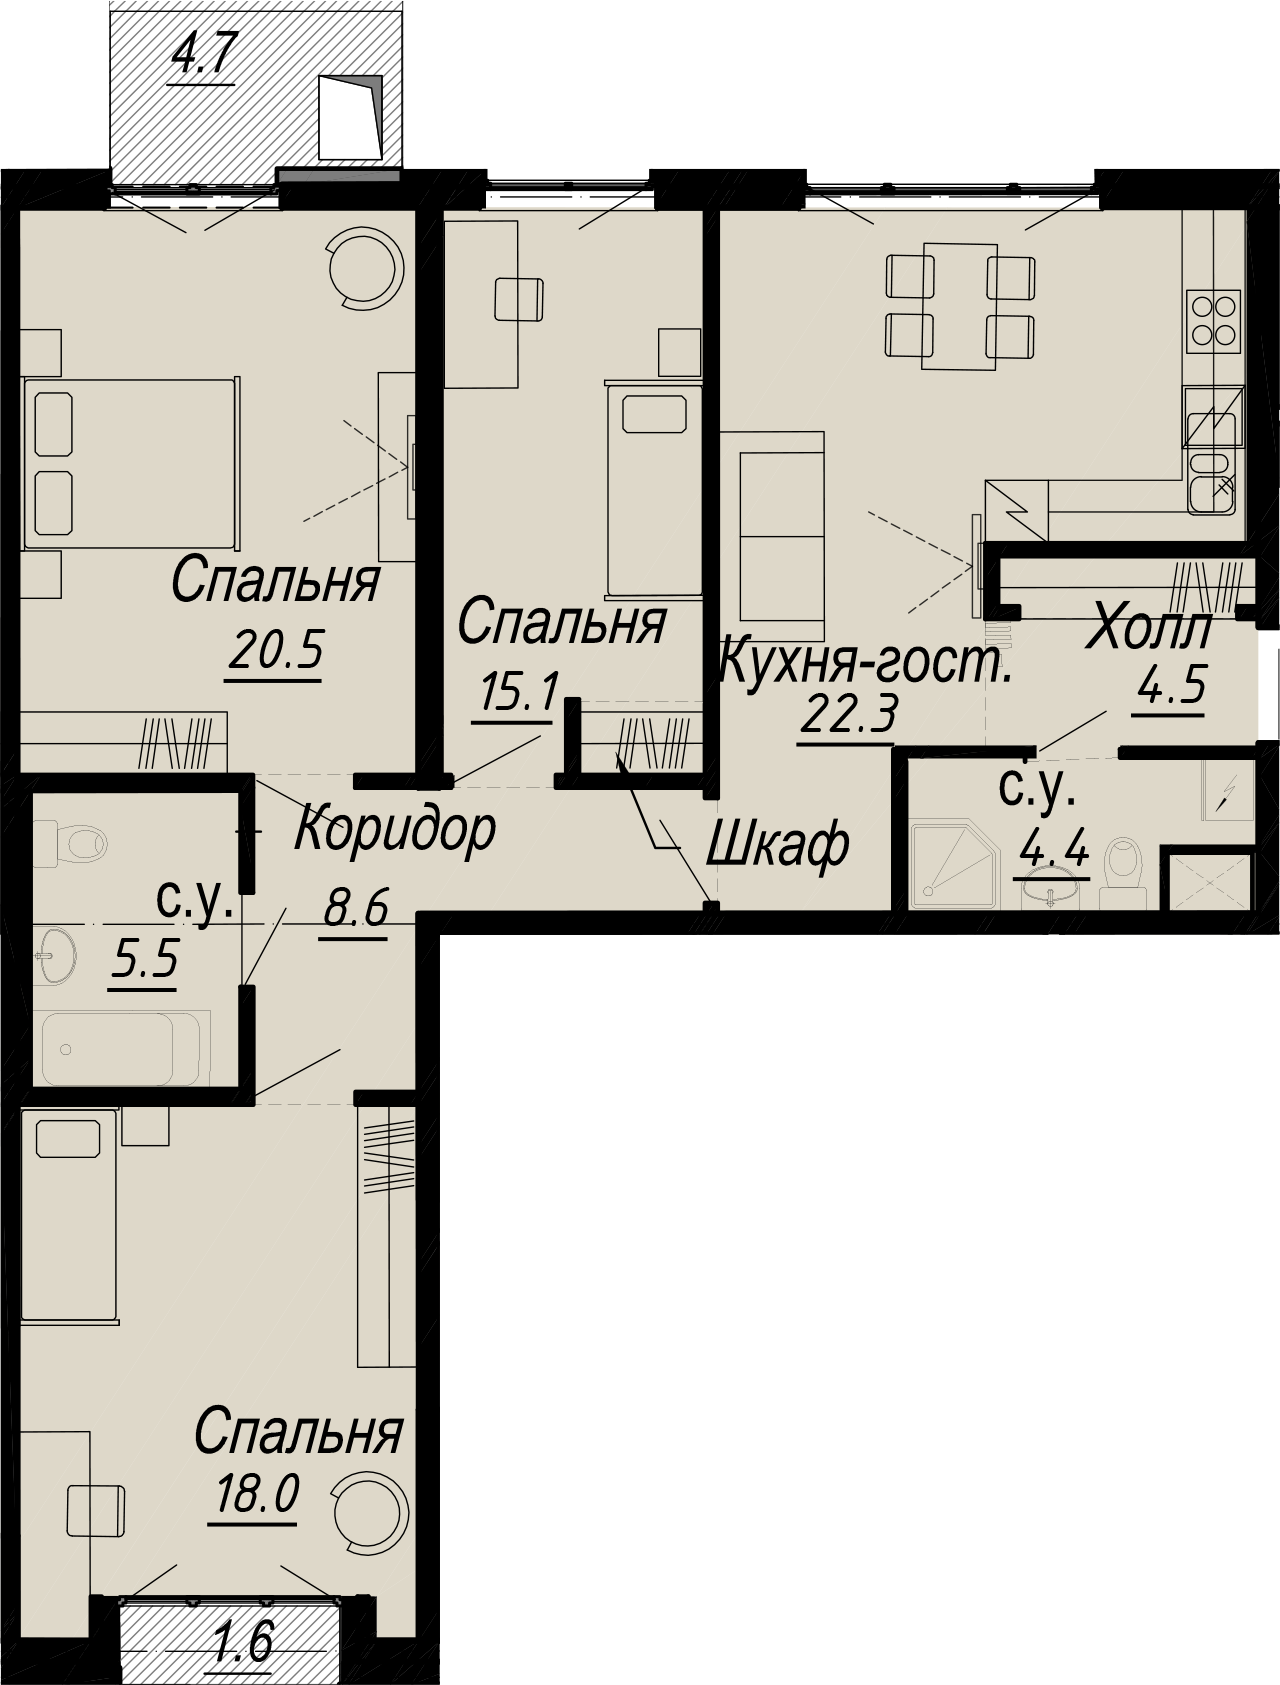 3-комнатная квартира  №5-4 в Meltzer Hall: 99.8 м², этаж 4 - купить в Санкт-Петербурге